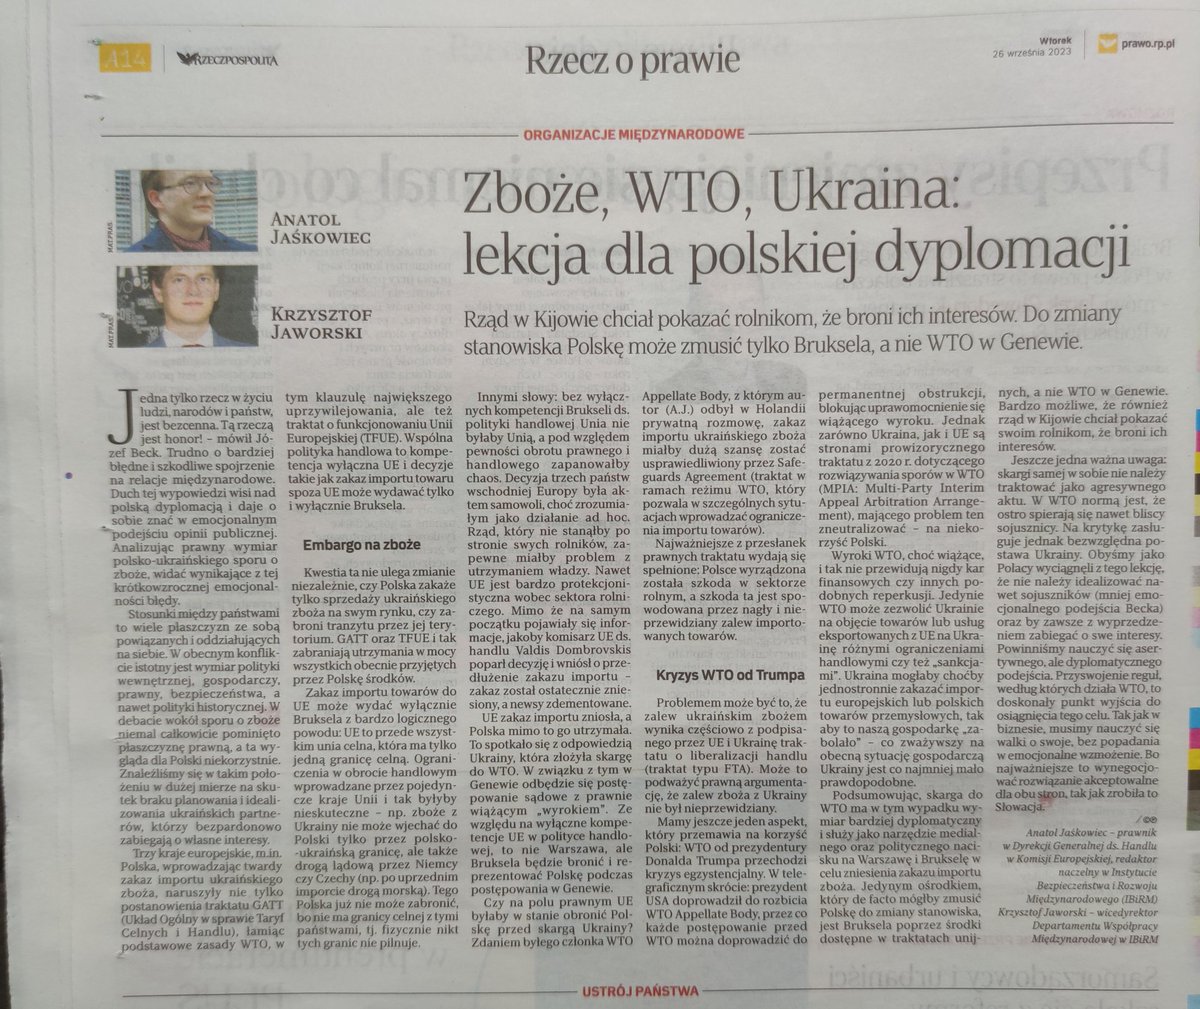 Dziś w @rzeczpospolita rozwinięcie mojego komentarza z Twittera o WTO i ukraińskim zbożu, który nabił 60k wyświetleń. Razem z @Krz_Jaworski na zaproszenie @TumidalWoj 

Dziękujemy!

@LukasKobierski @LachowskiMateus
@Anna_M_Dyner @DariuszRosiak

rp.pl/rzecz-o-prawie…